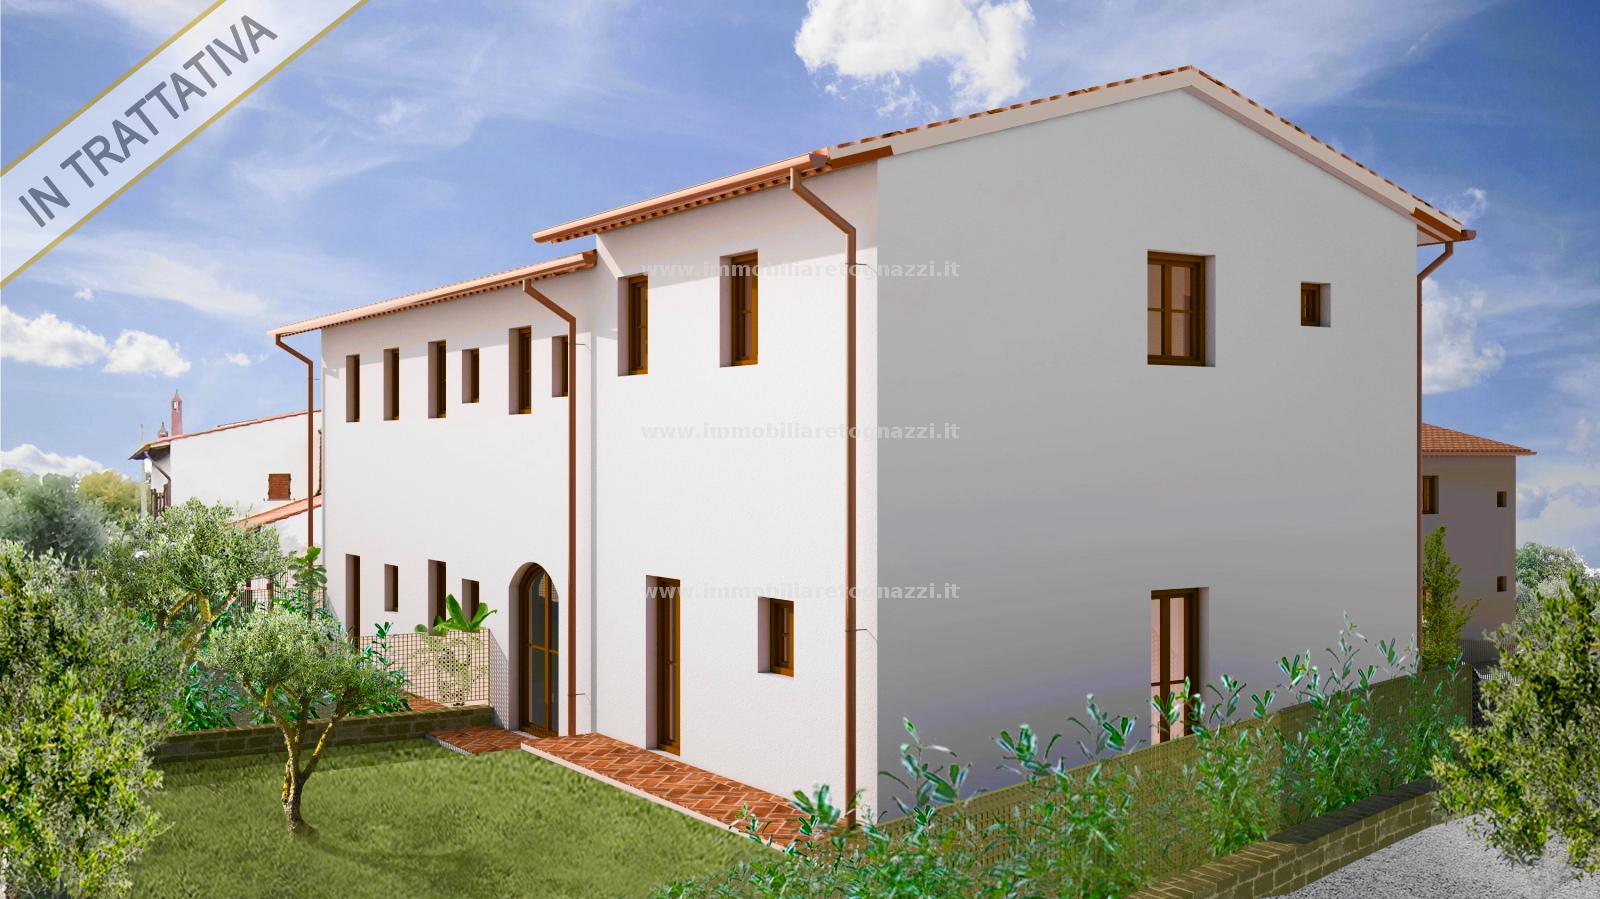 Villa a Schiera in vendita a Gambassi Terme, 3 locali, prezzo € 250.000 | PortaleAgenzieImmobiliari.it